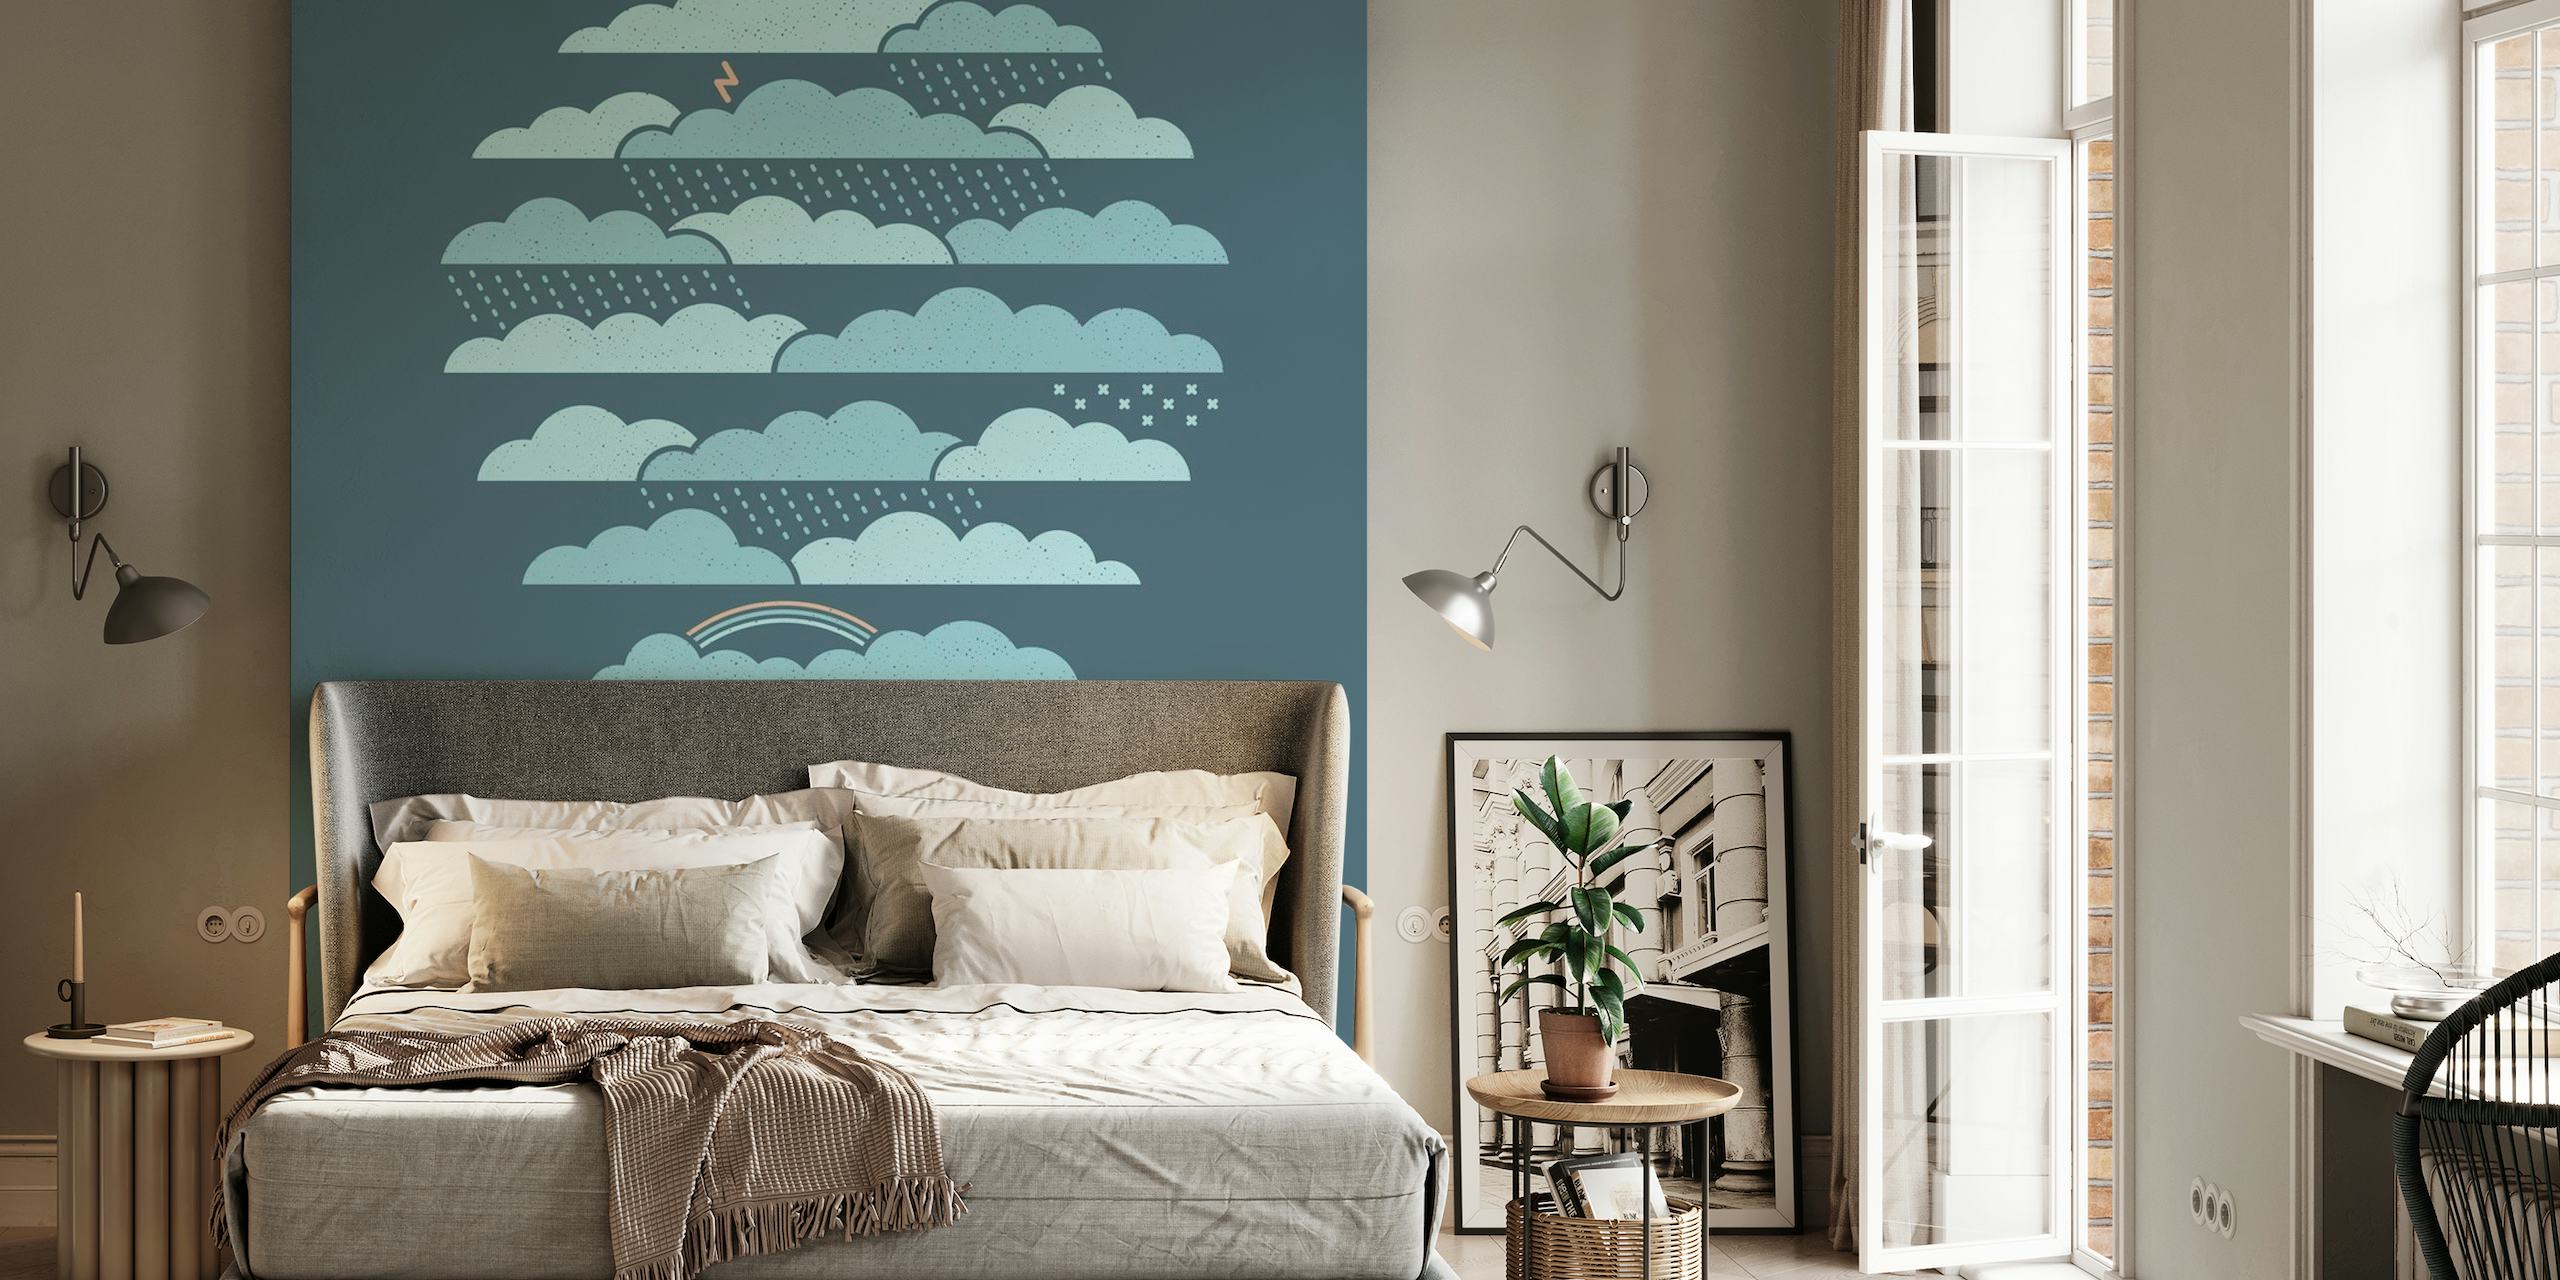 Decorazione murale con mongolfiera stilizzata che galleggia tra nuvole stratificate in tonalità di blu